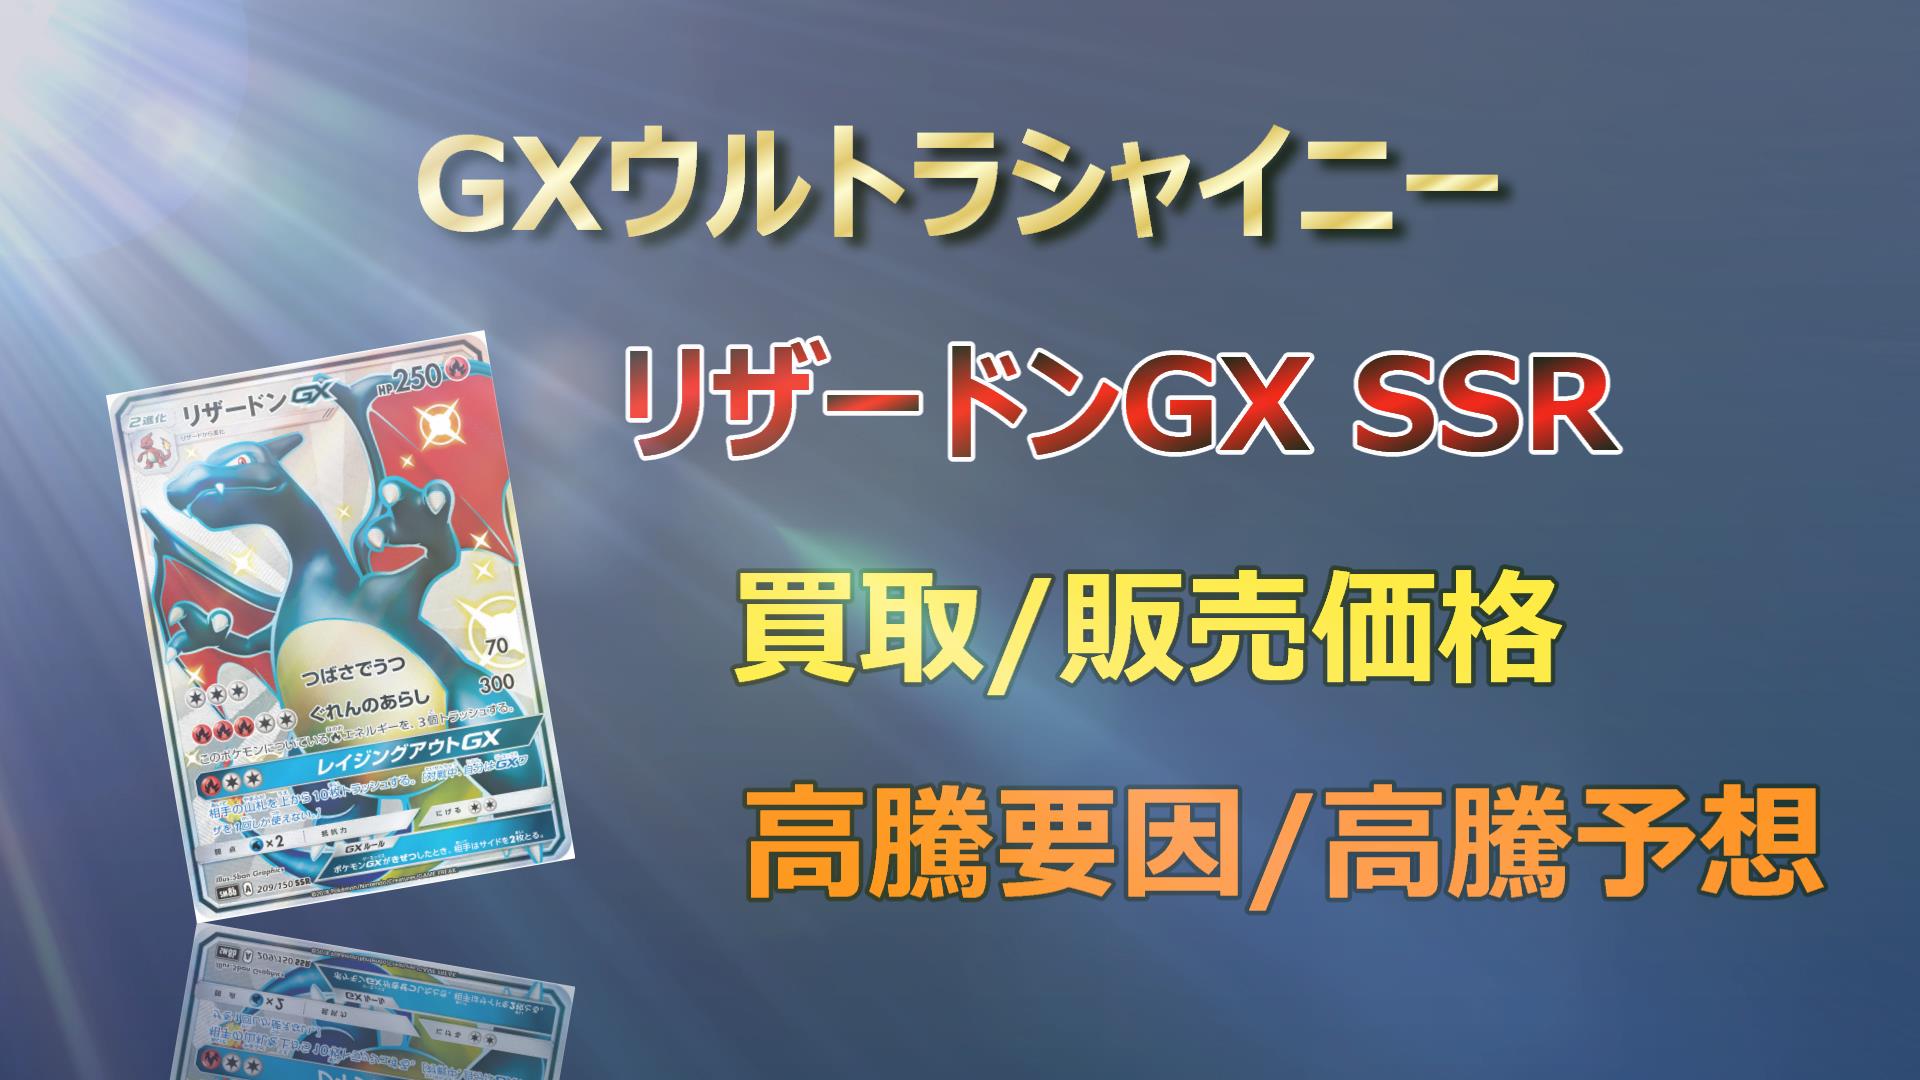 リザードンGX SSR 毎日1000円値下げ